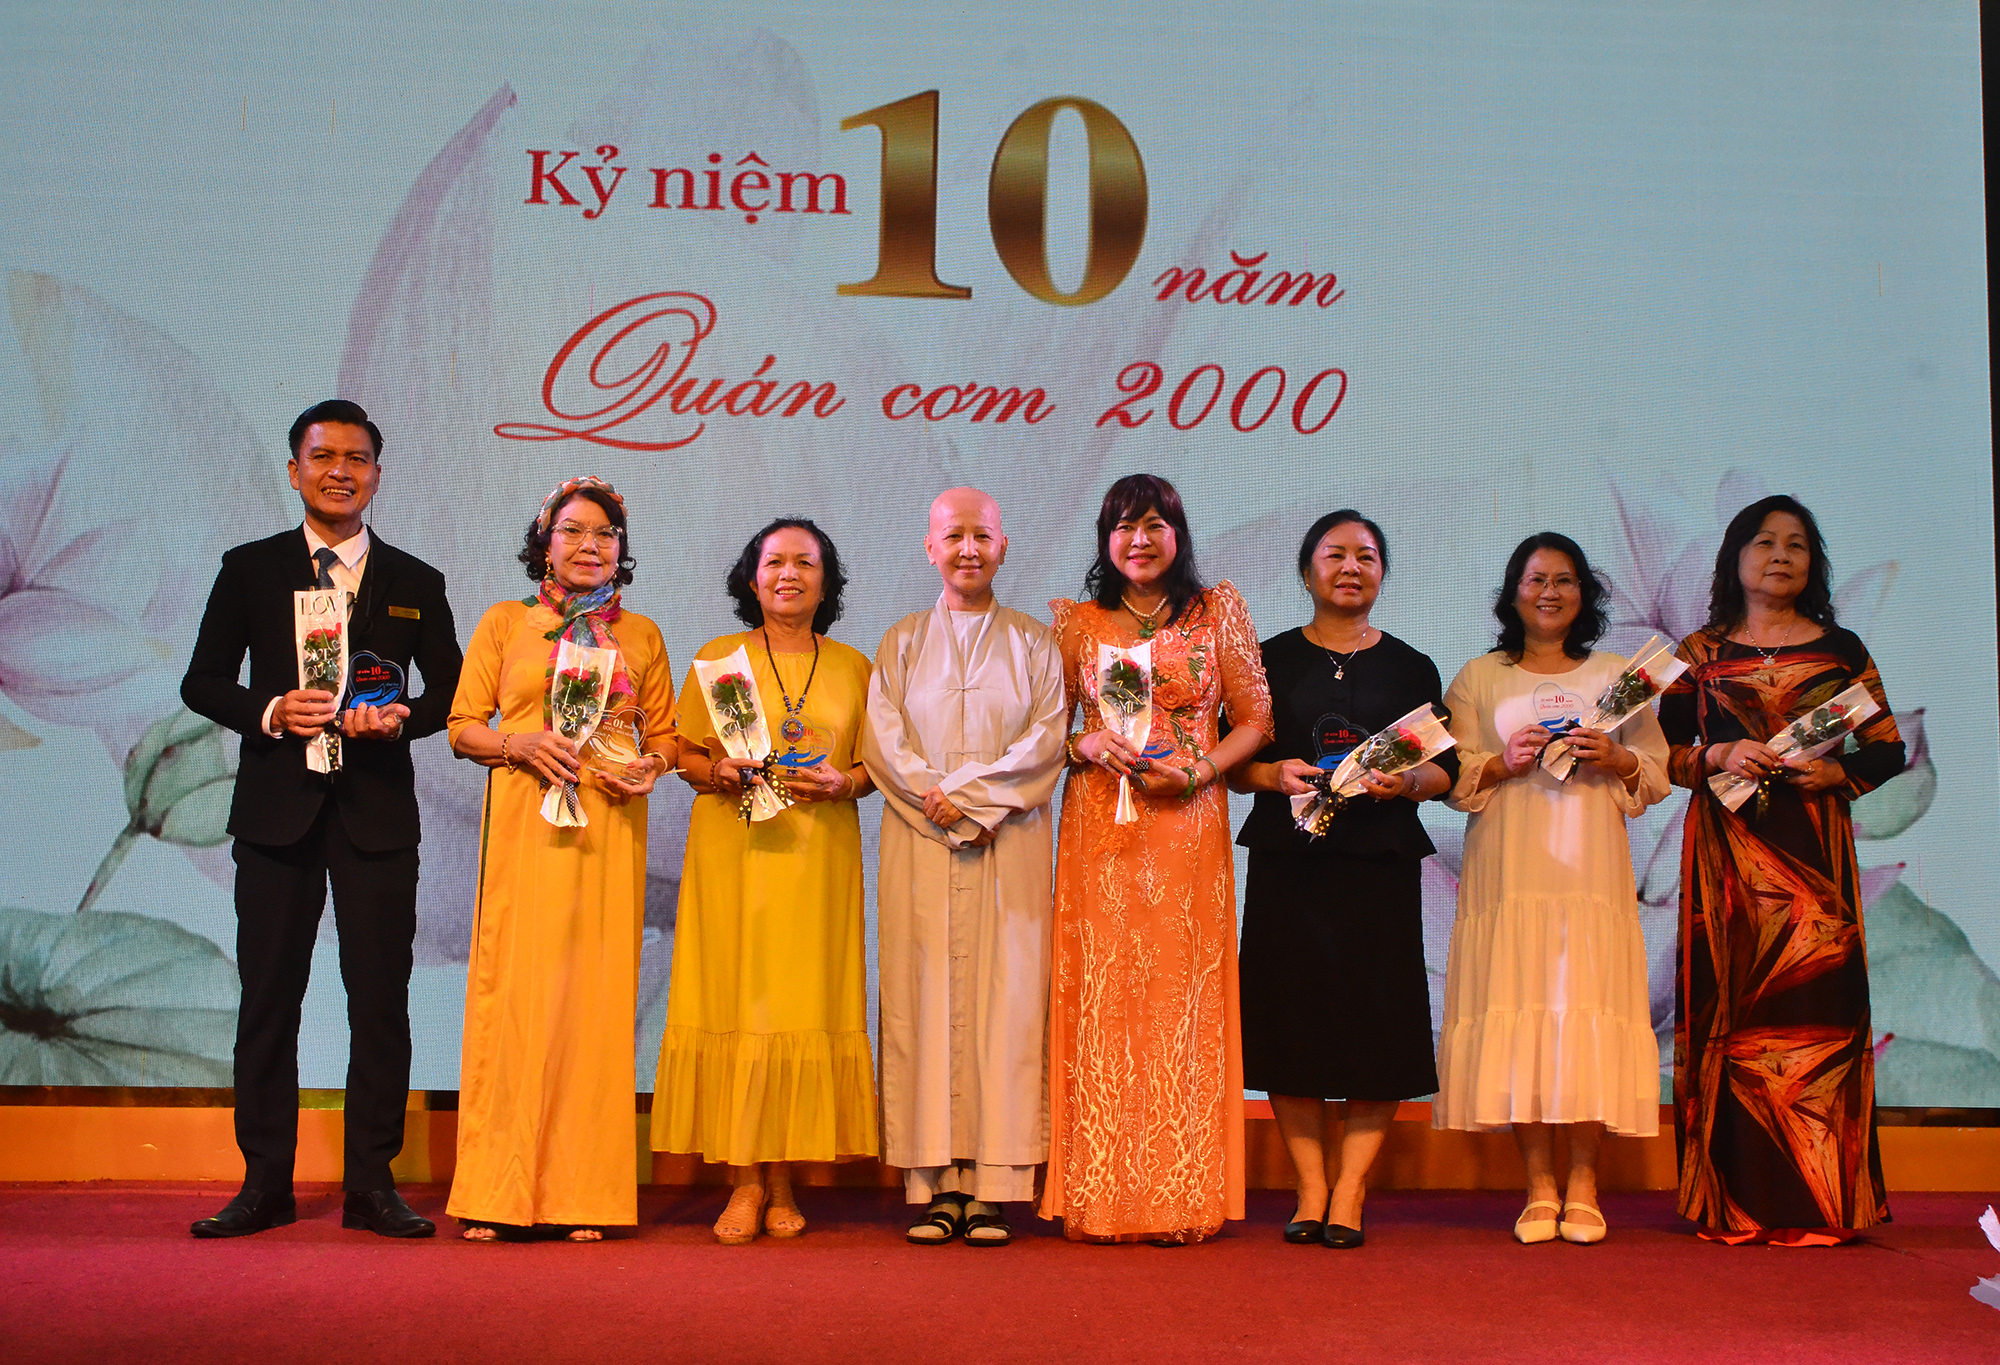 Sư cô Chơn Phước tặng kỷ niệm chương tri ân các nhà hảo tâm đã đóng góp để duy trì quán cơm phục vụ người nghèo trong suốt 10 năm qua.